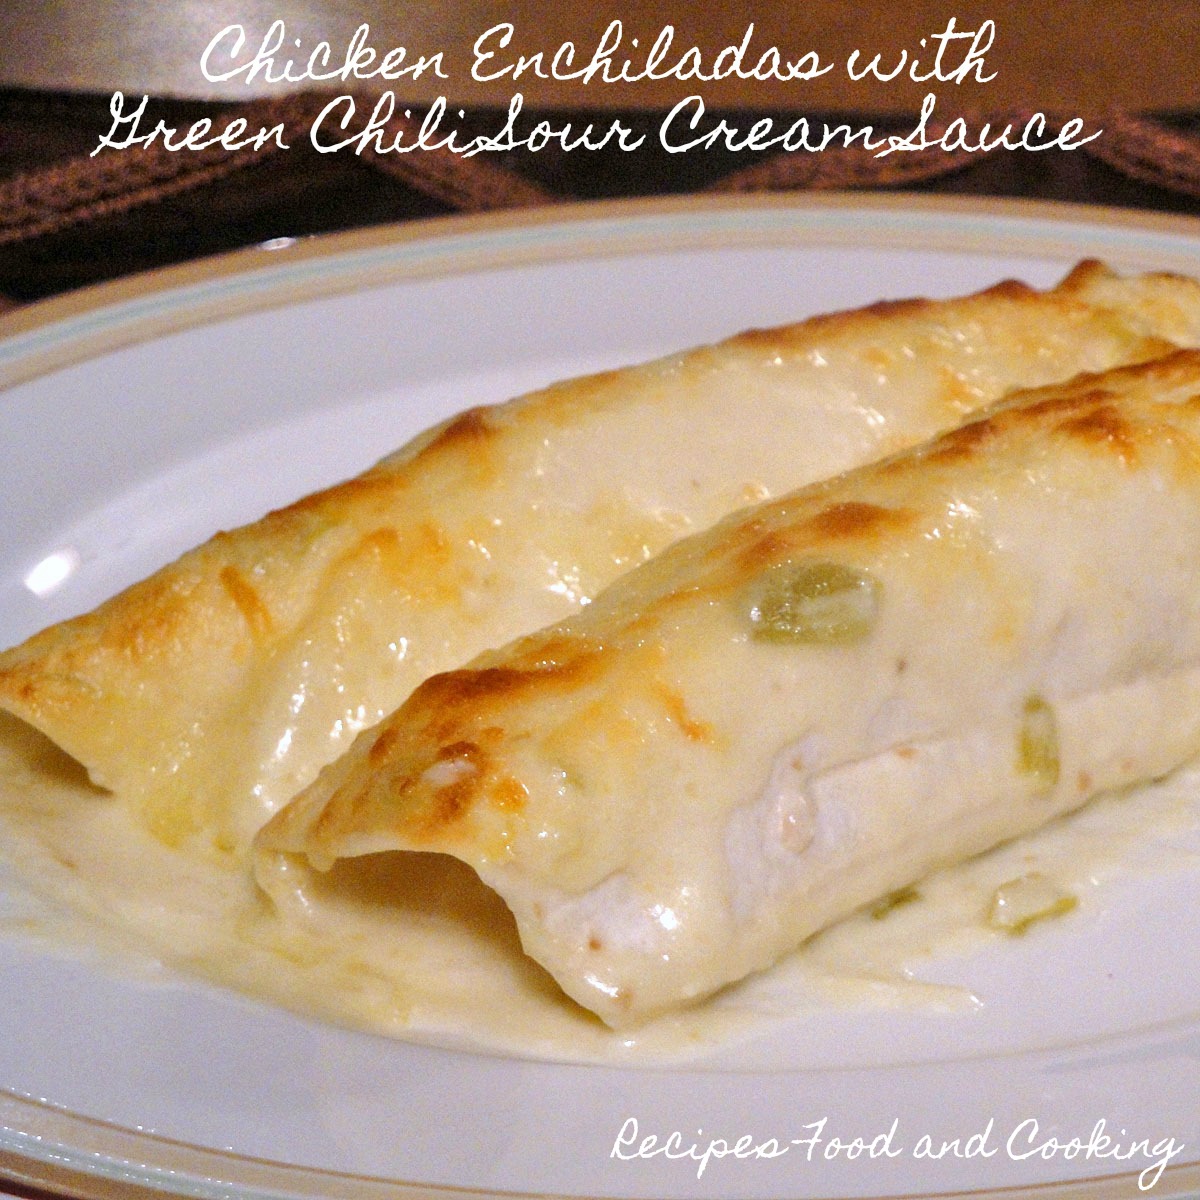 Chicken Enchiladas with Green Chili Sour Cream Sauce